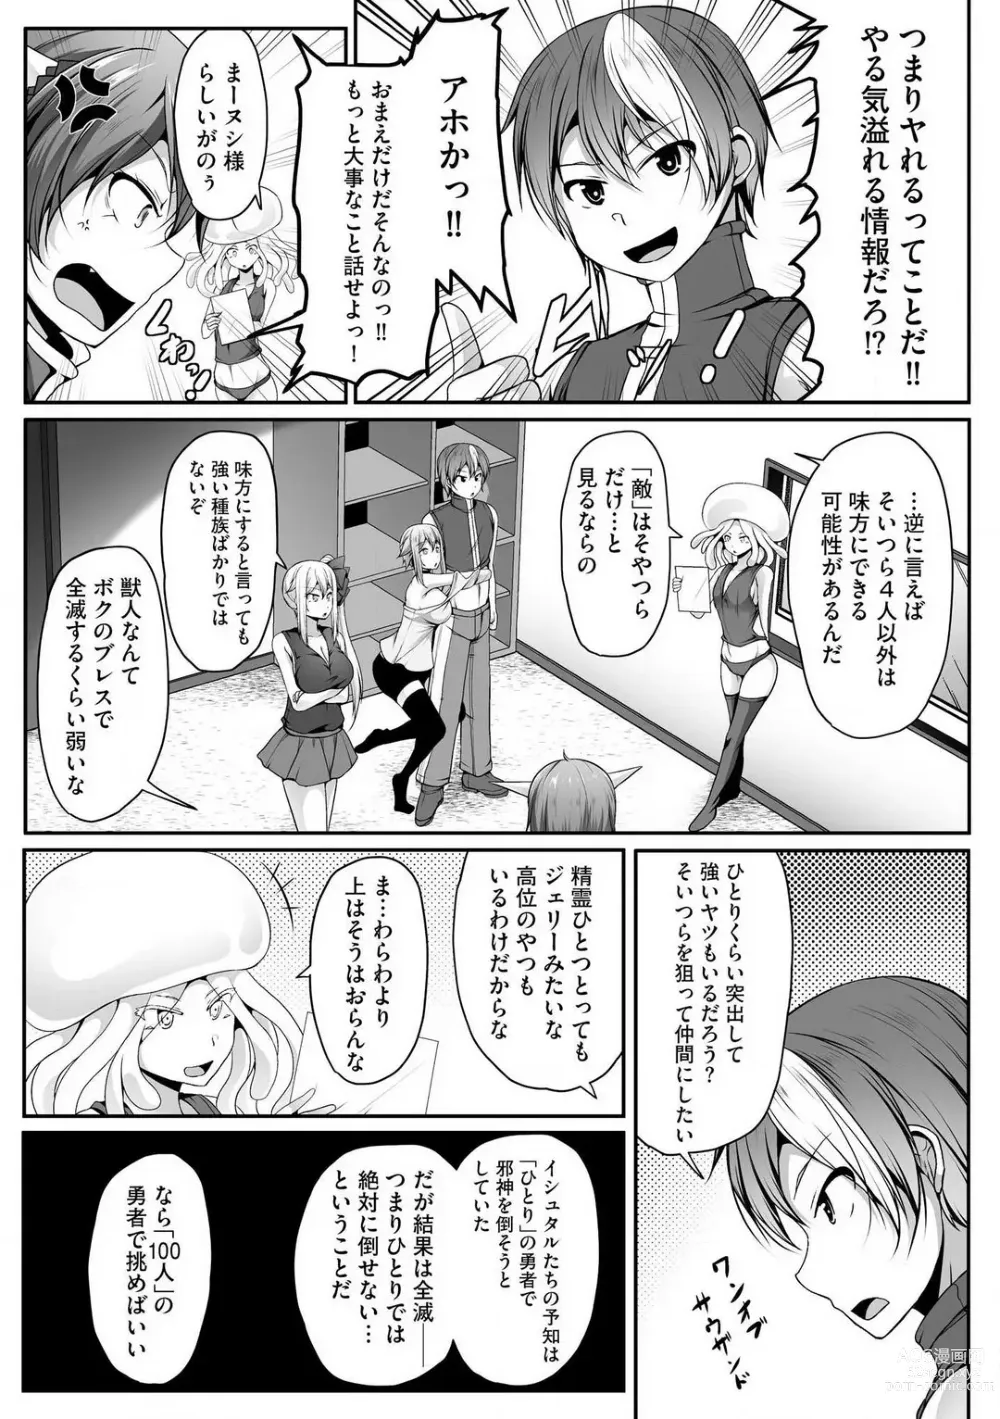 Page 346 of manga Cheat Skill Shihai